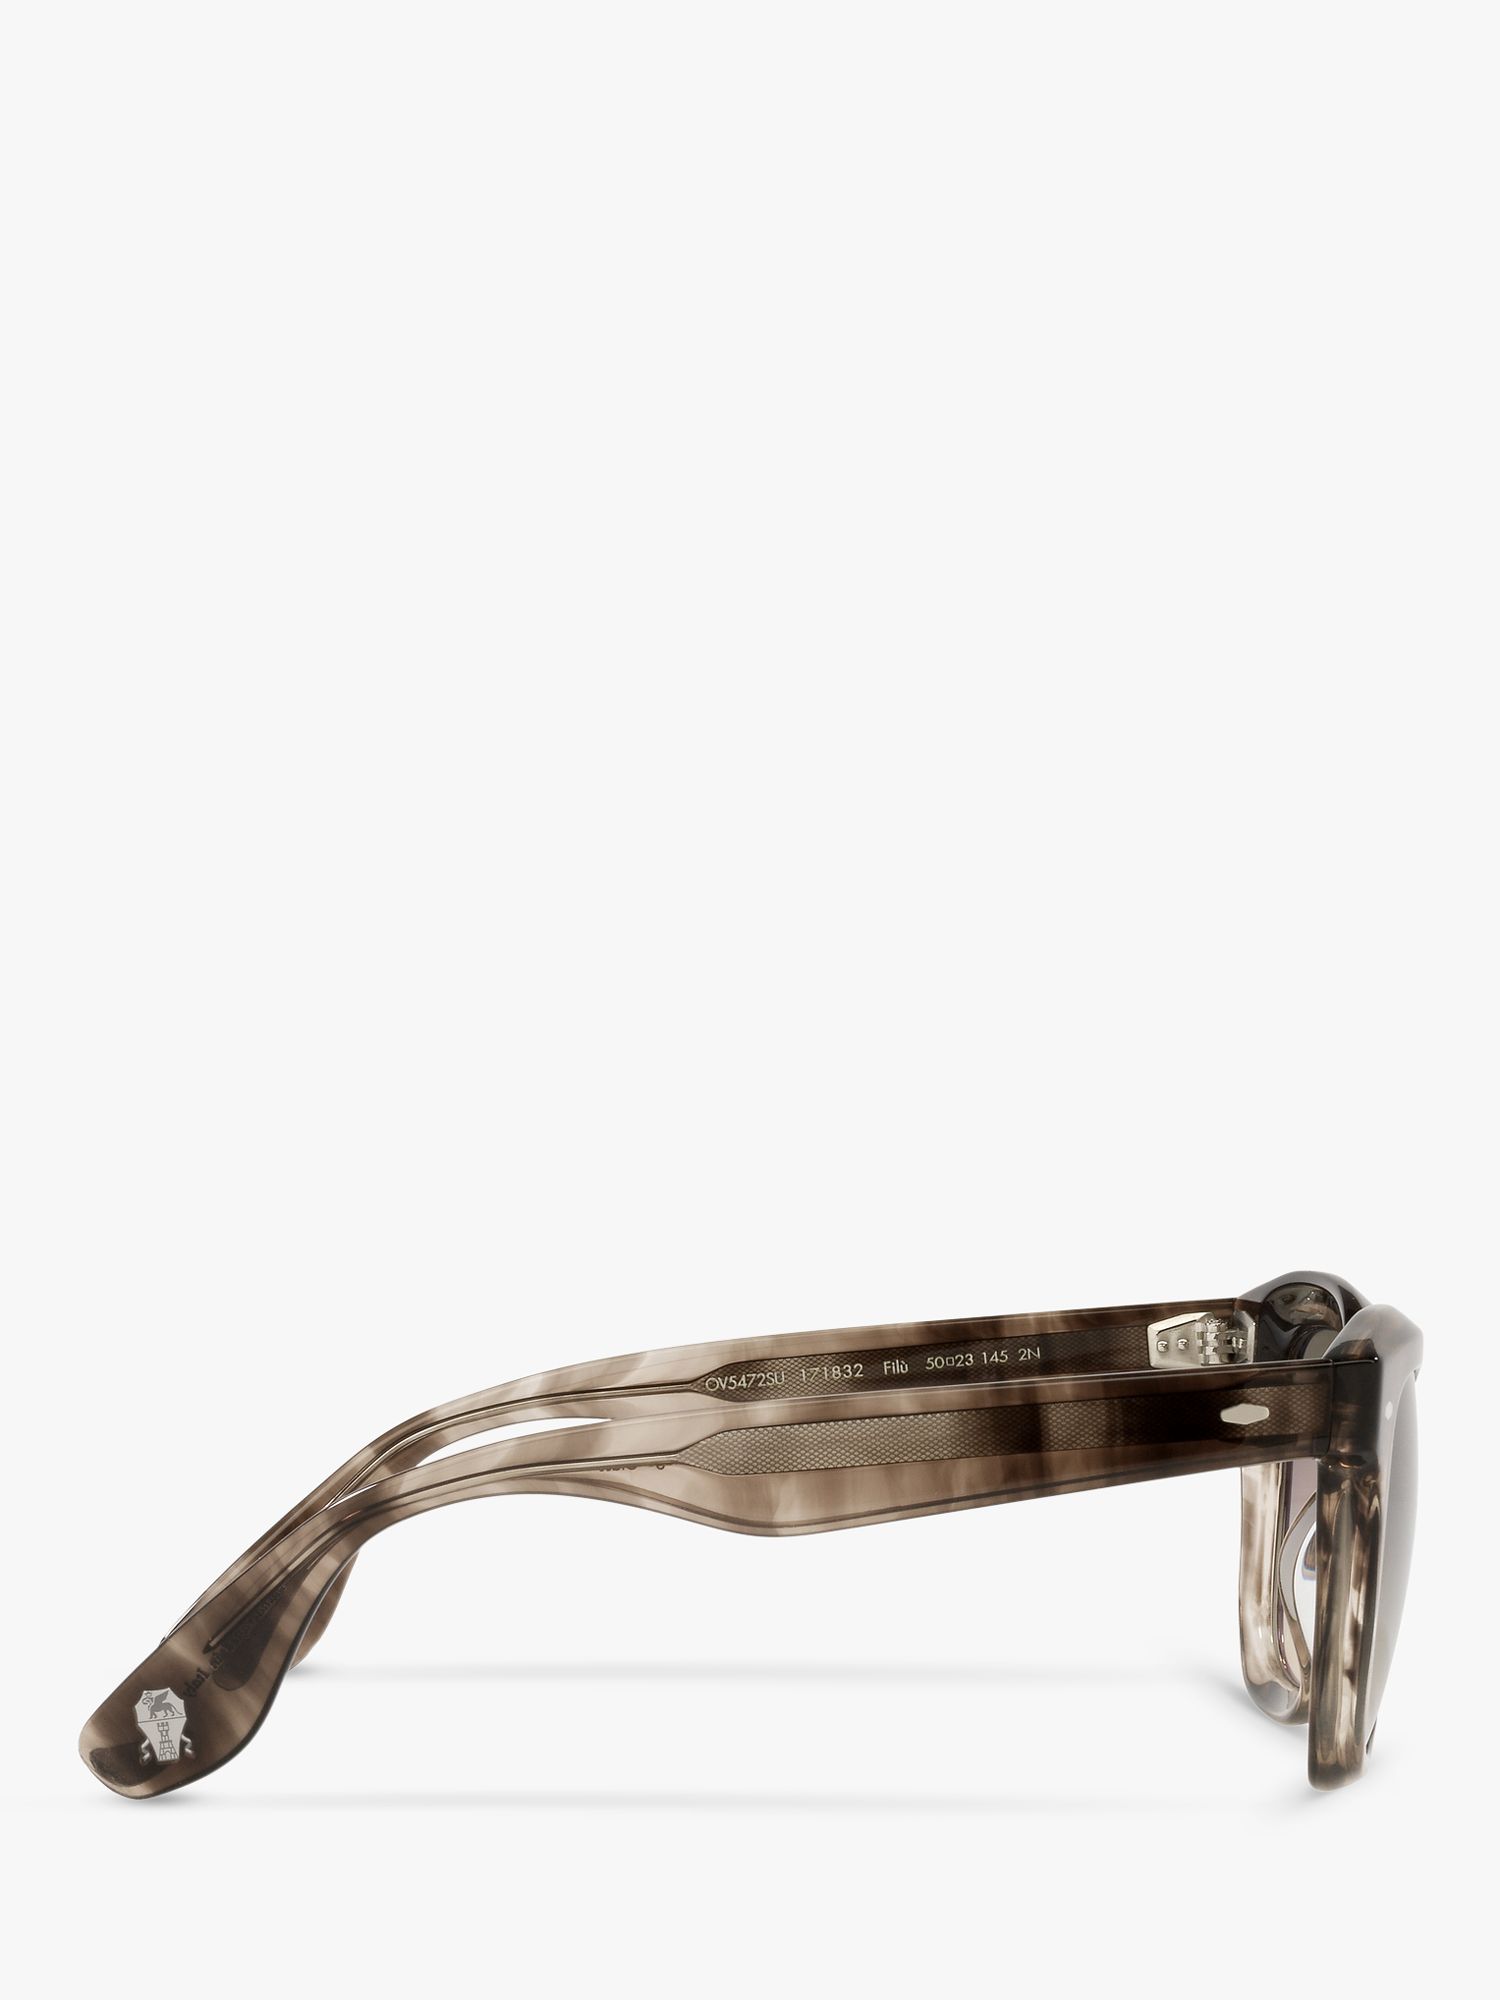 Oliver Peoples OV5472SU Unisex Gradient Lens Sunglasses, Taupe Smoke